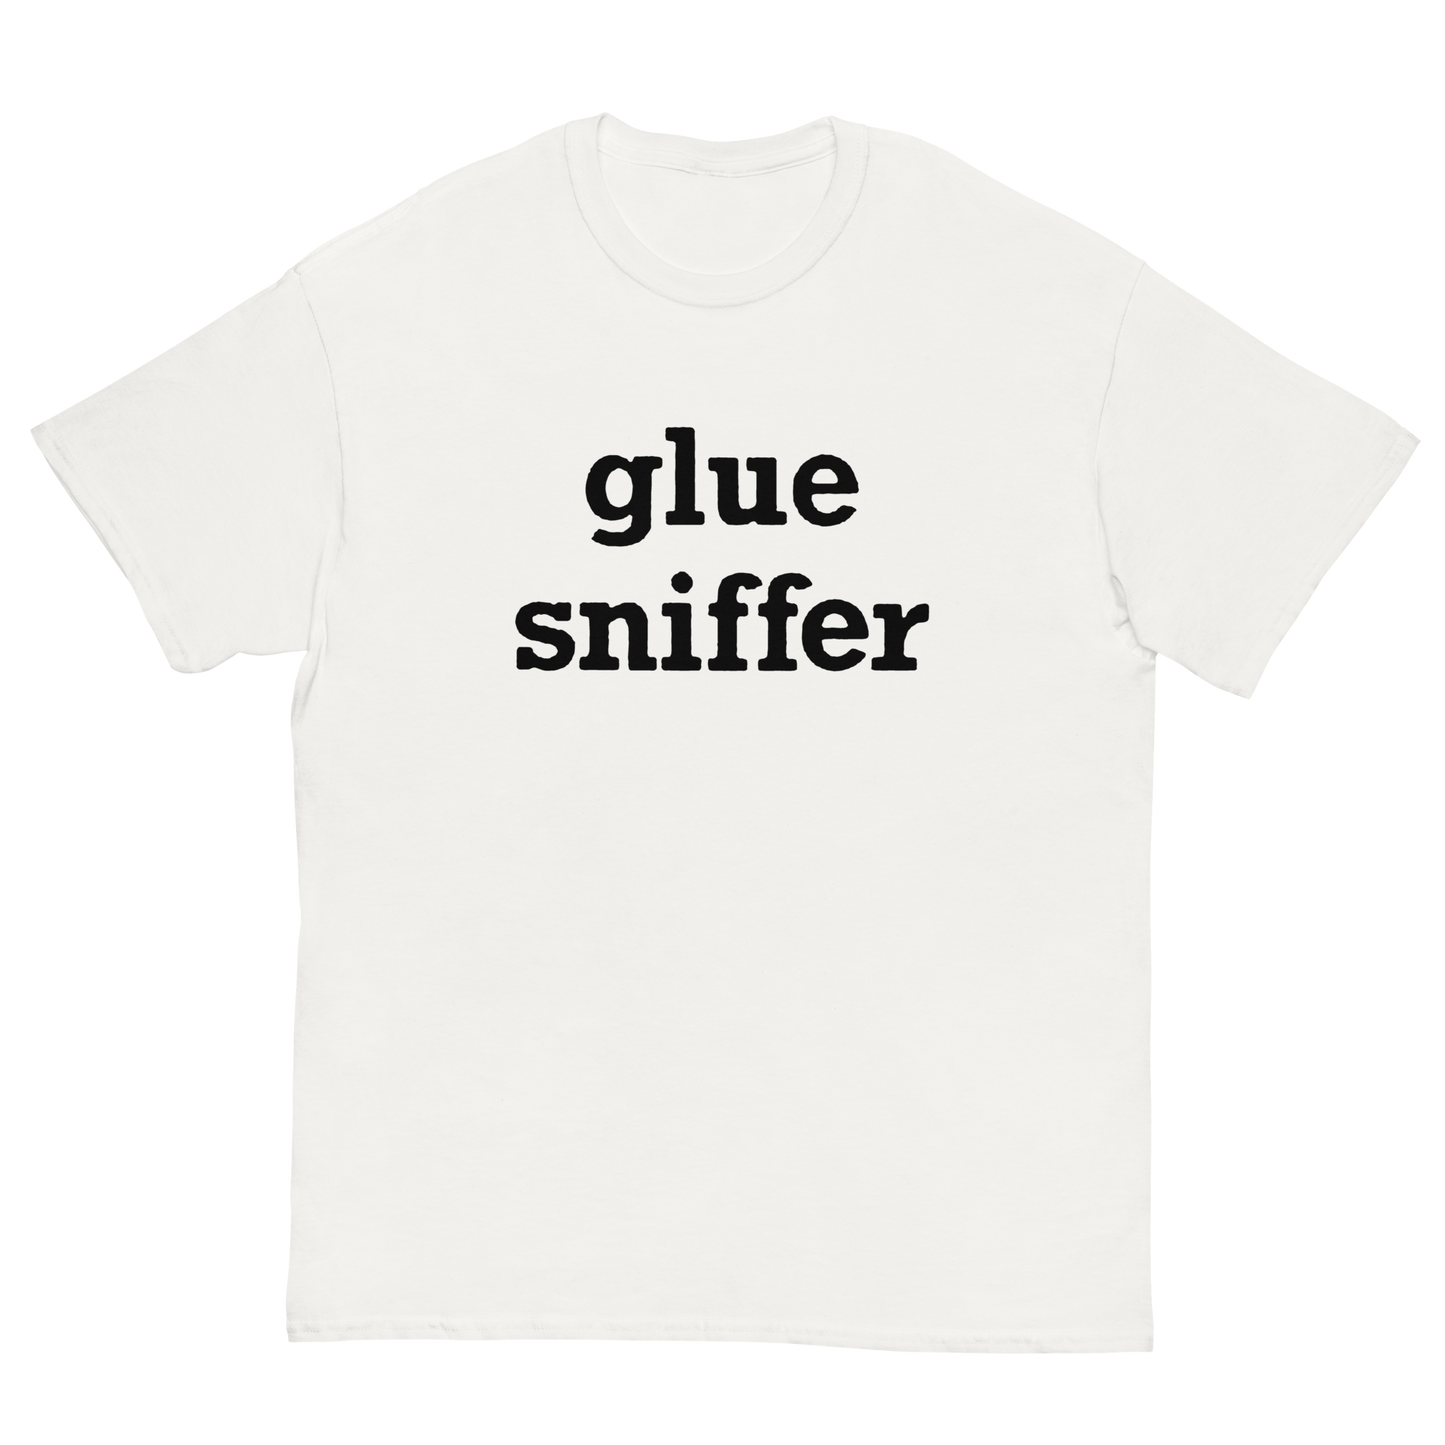 GLUE SNIFFER T-SHIRT